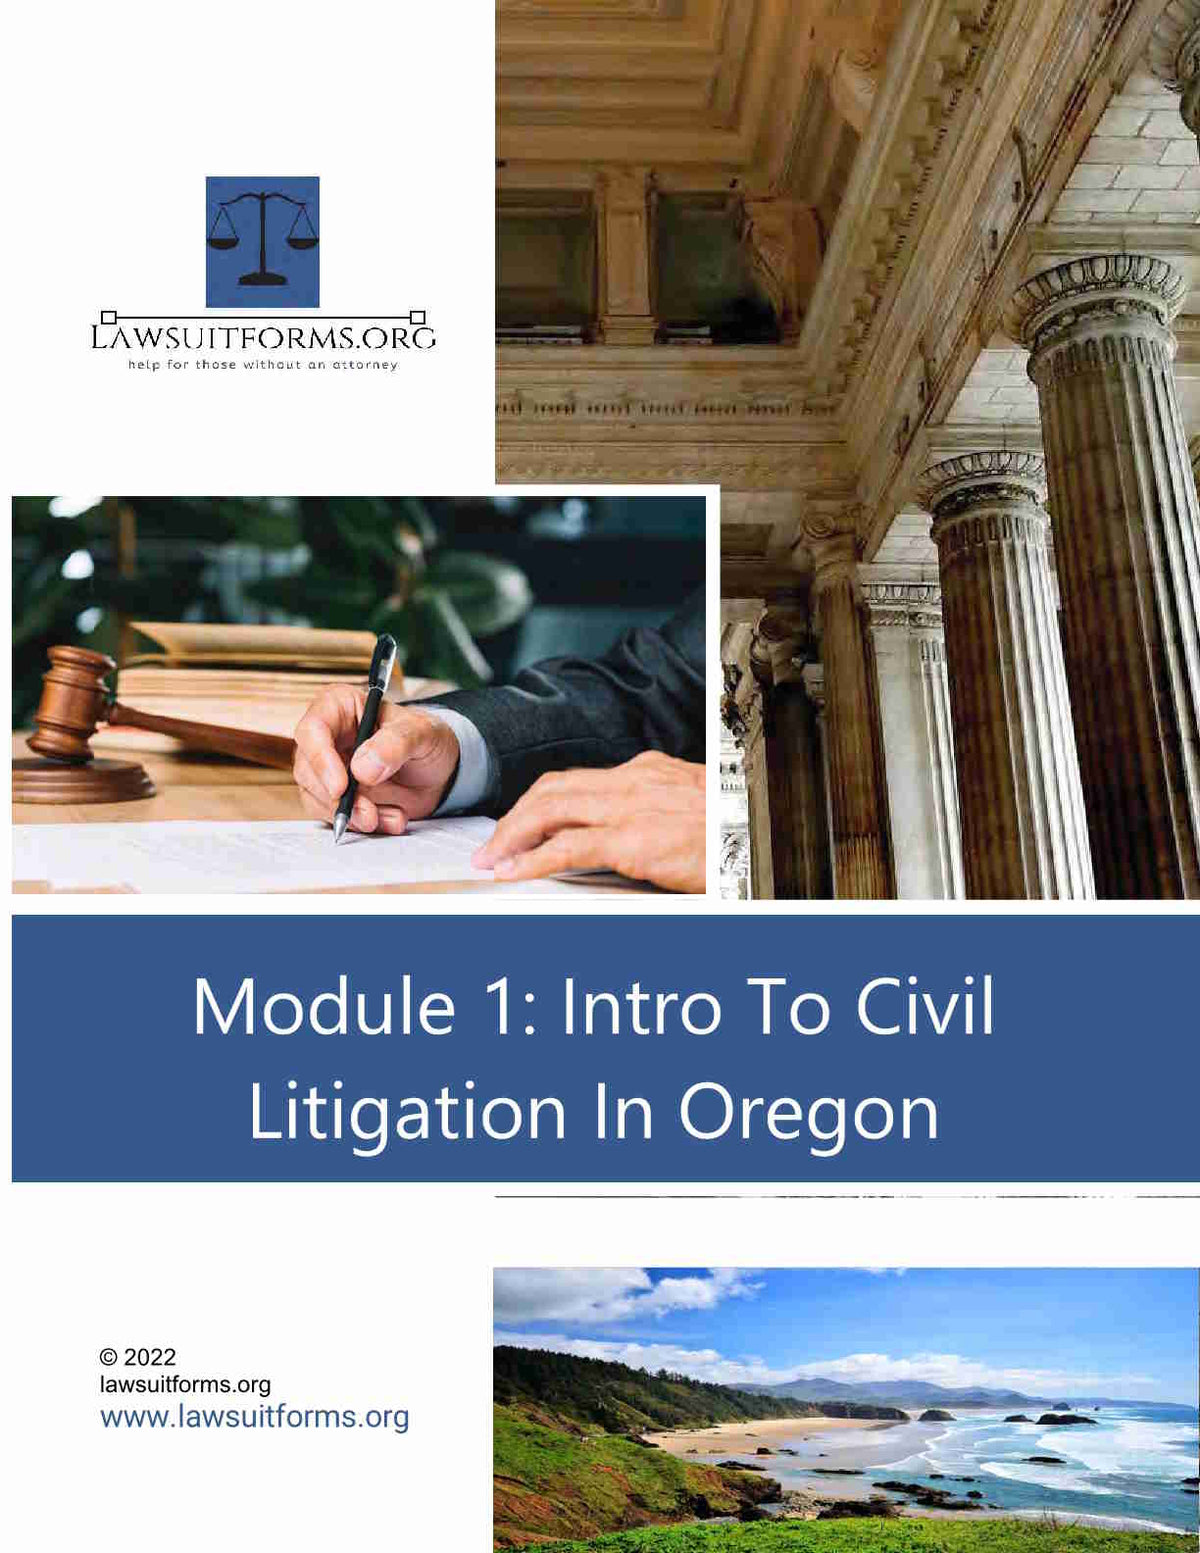 Intro to Civil Litigation in Oregon